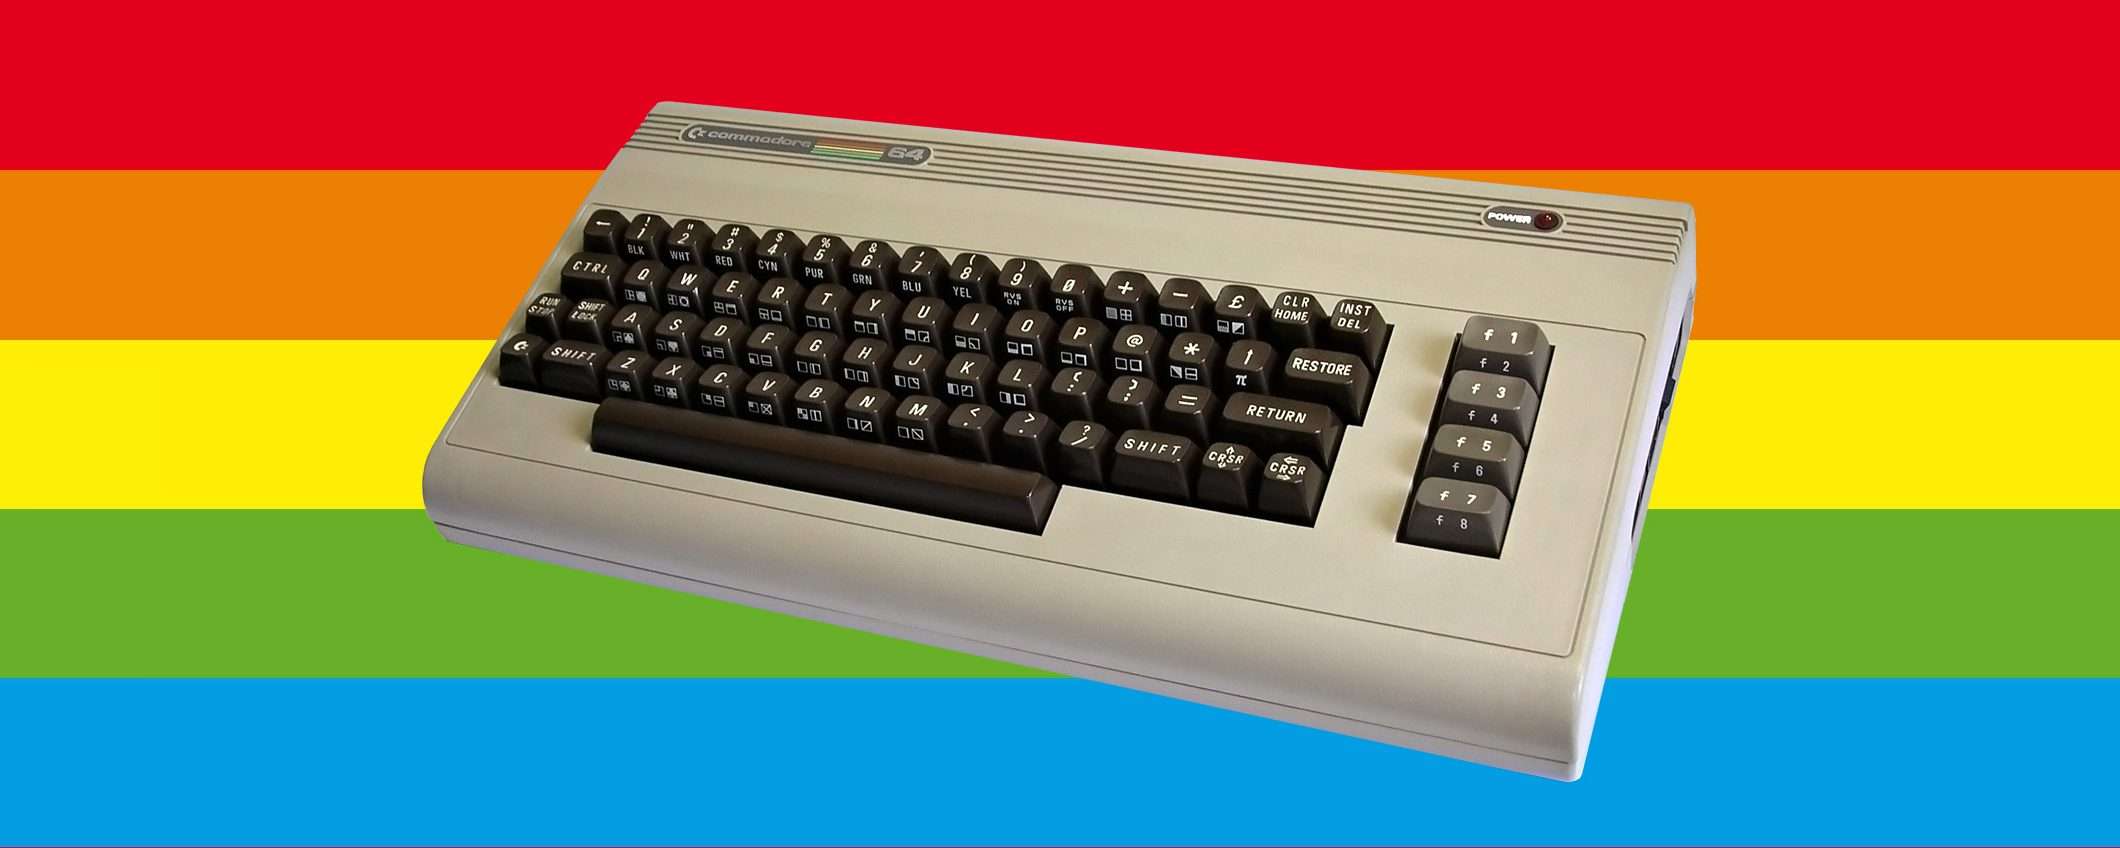 Commodore 64: i primi 40 di una leggenda